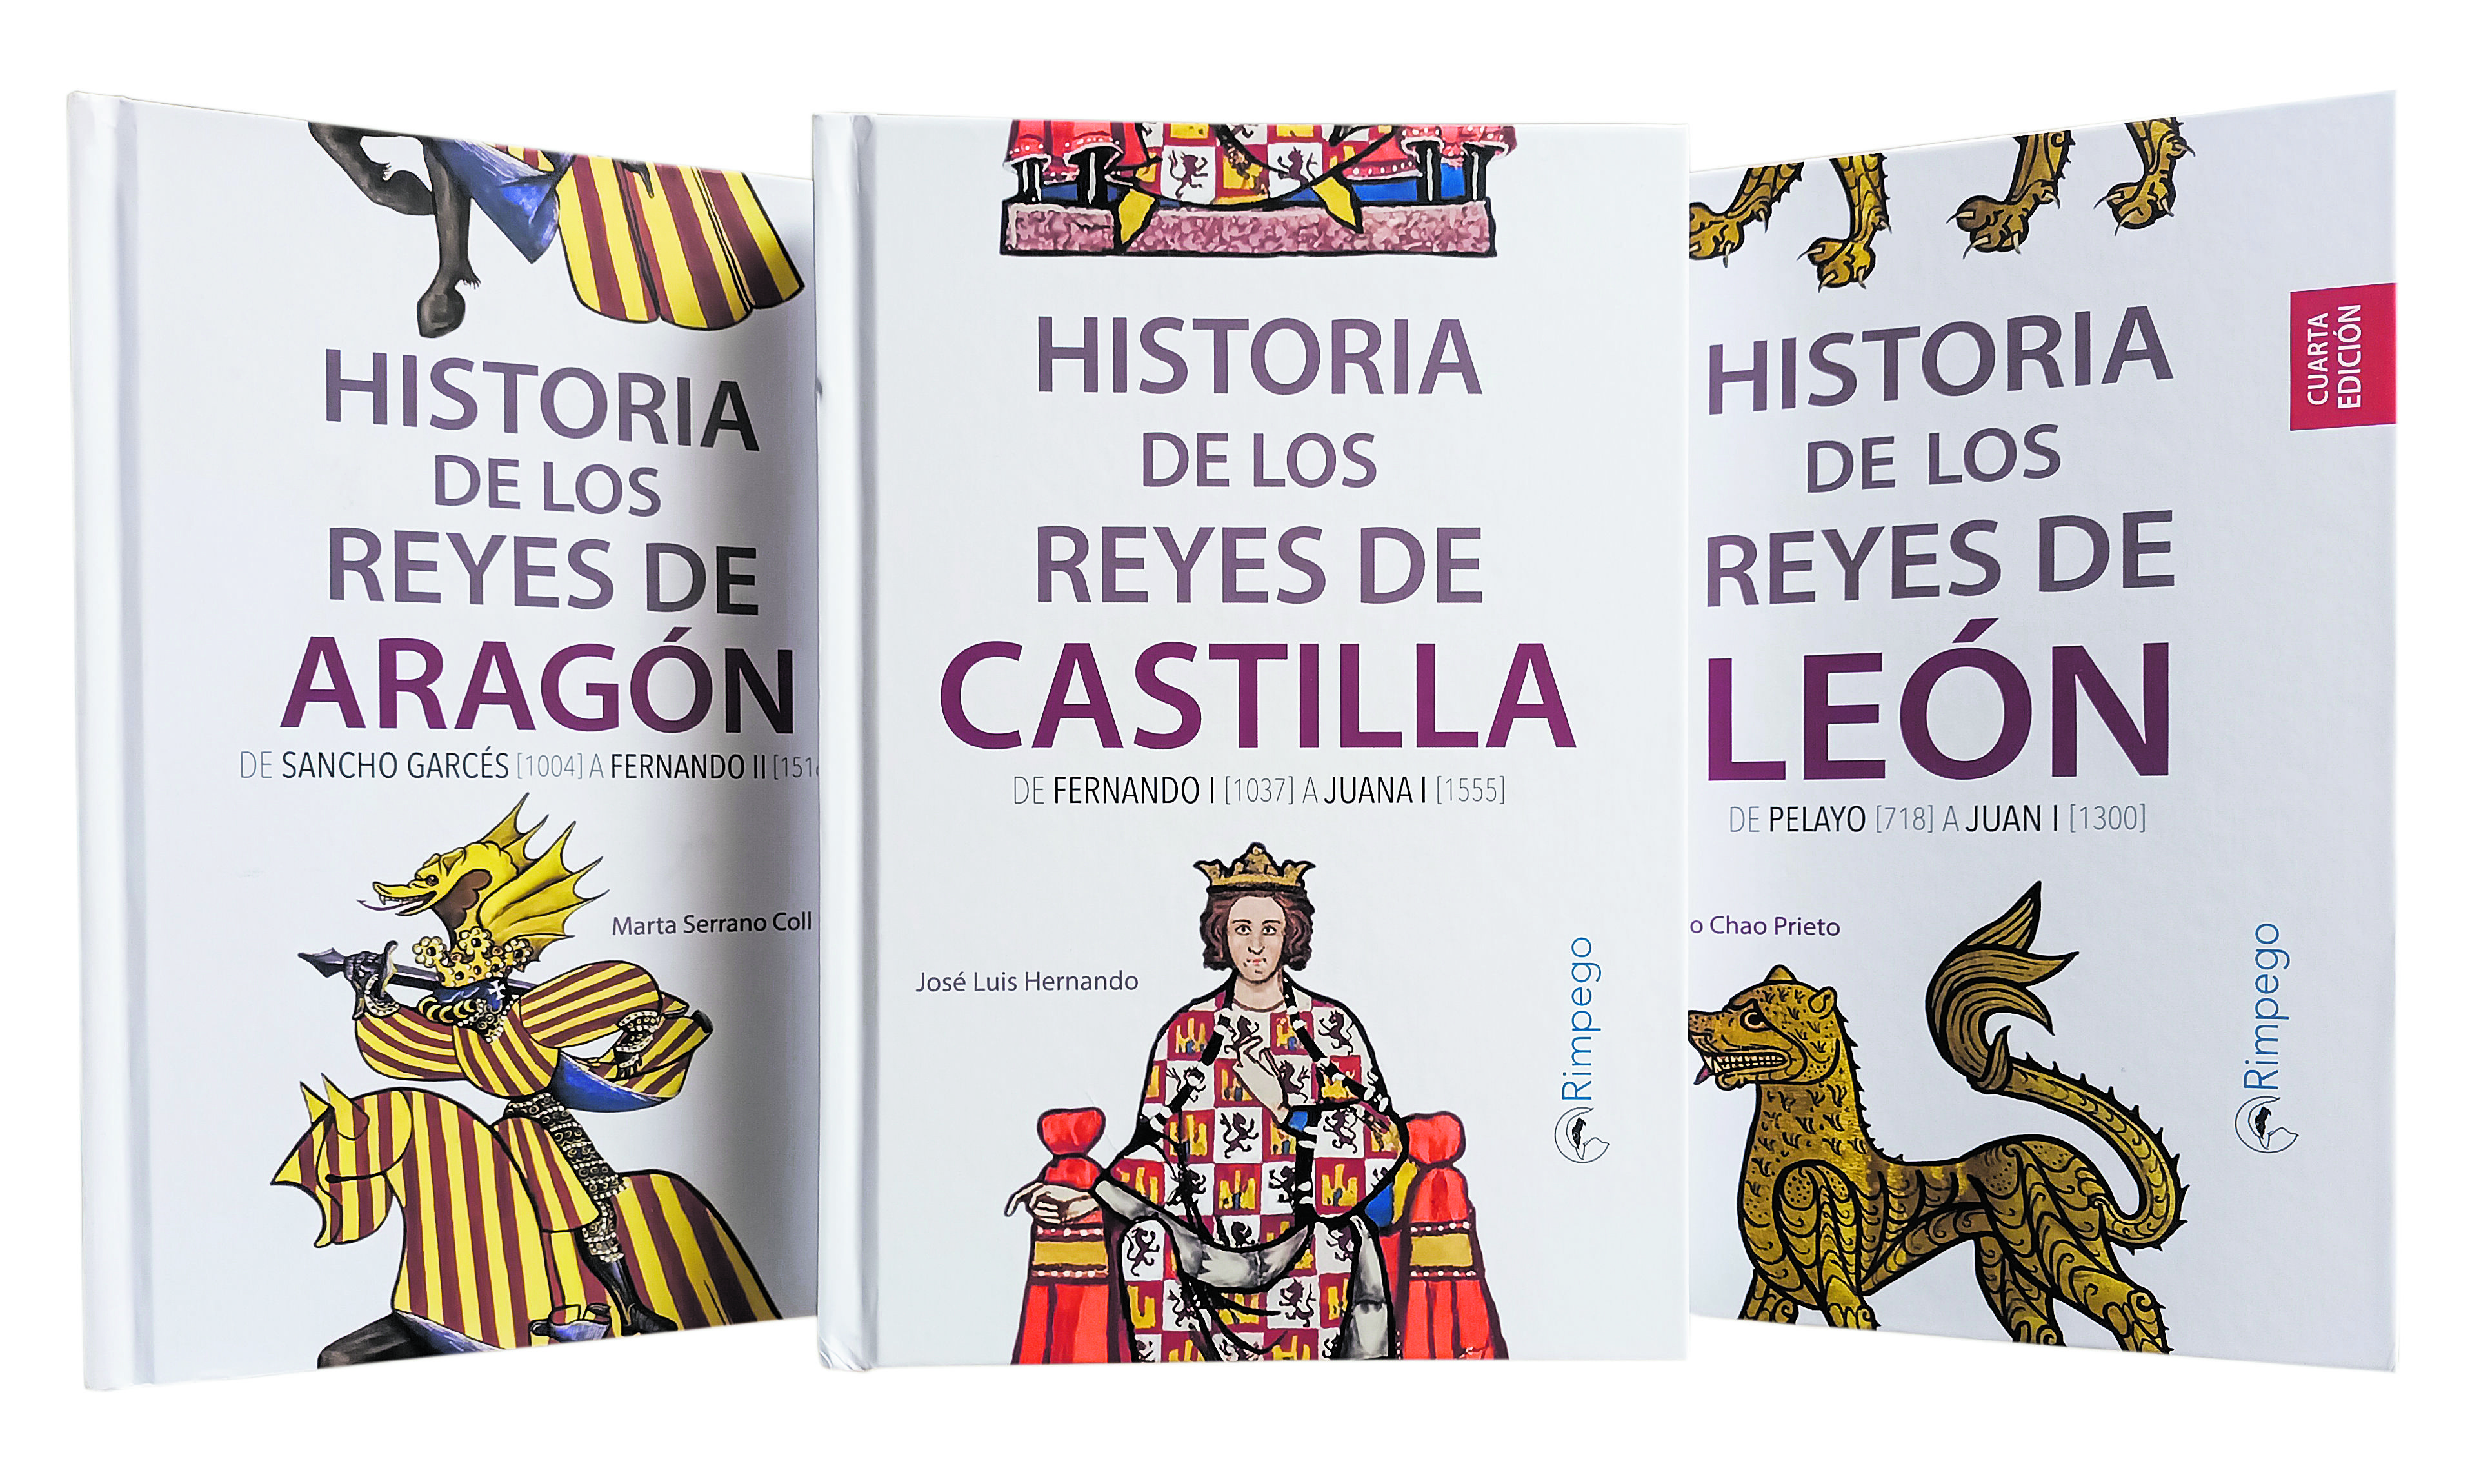  Historia de los Reyes de Castilla, nueva entrega de la colección que ya dedicó a León y Aragón. | RIMPEGO